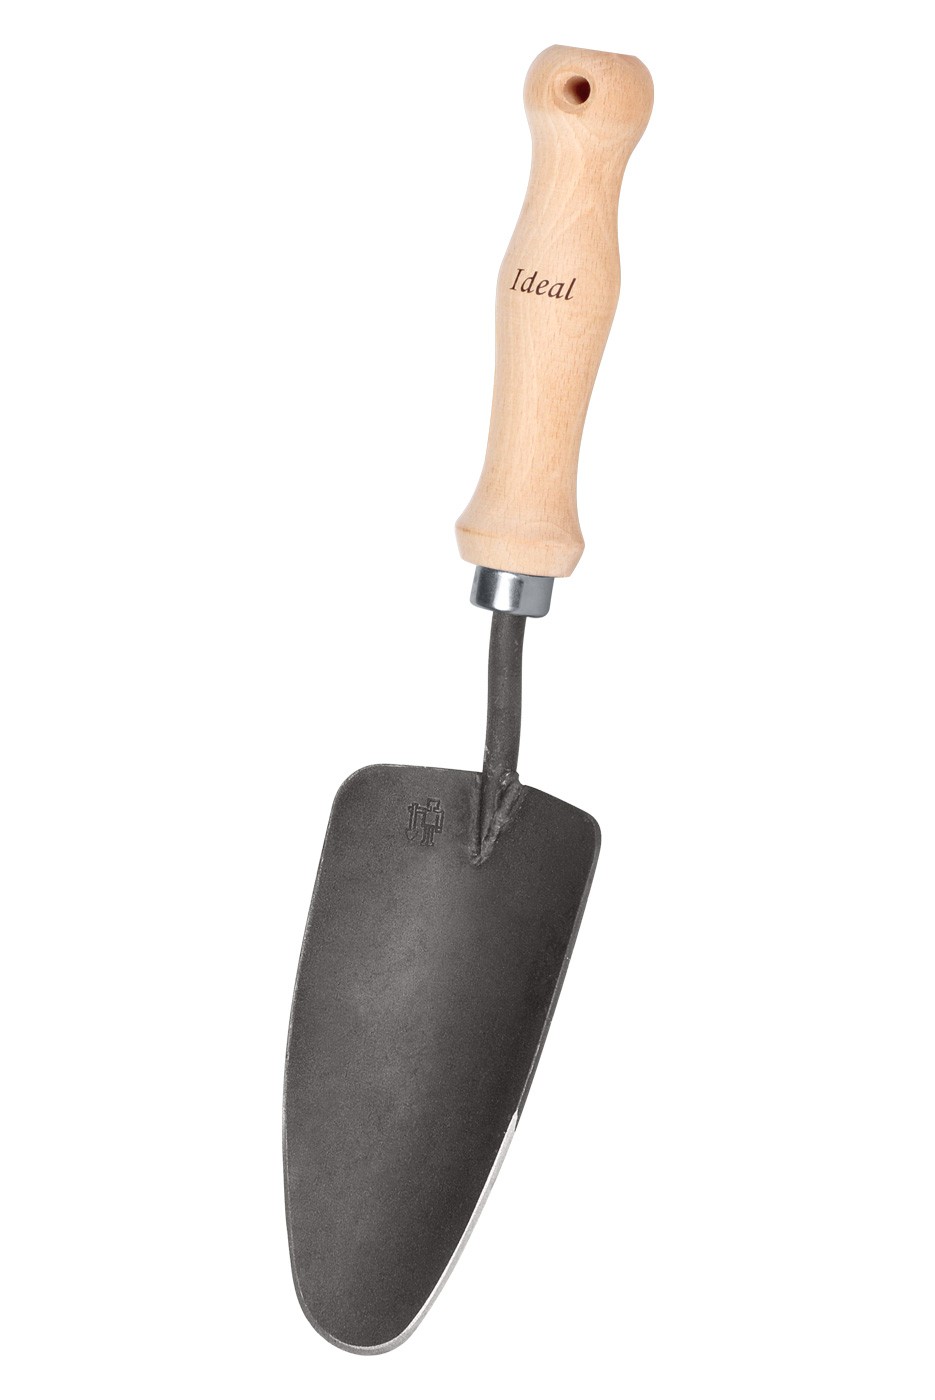 "IDEAL-Handschaufel breit" – wide Hand-Shovel